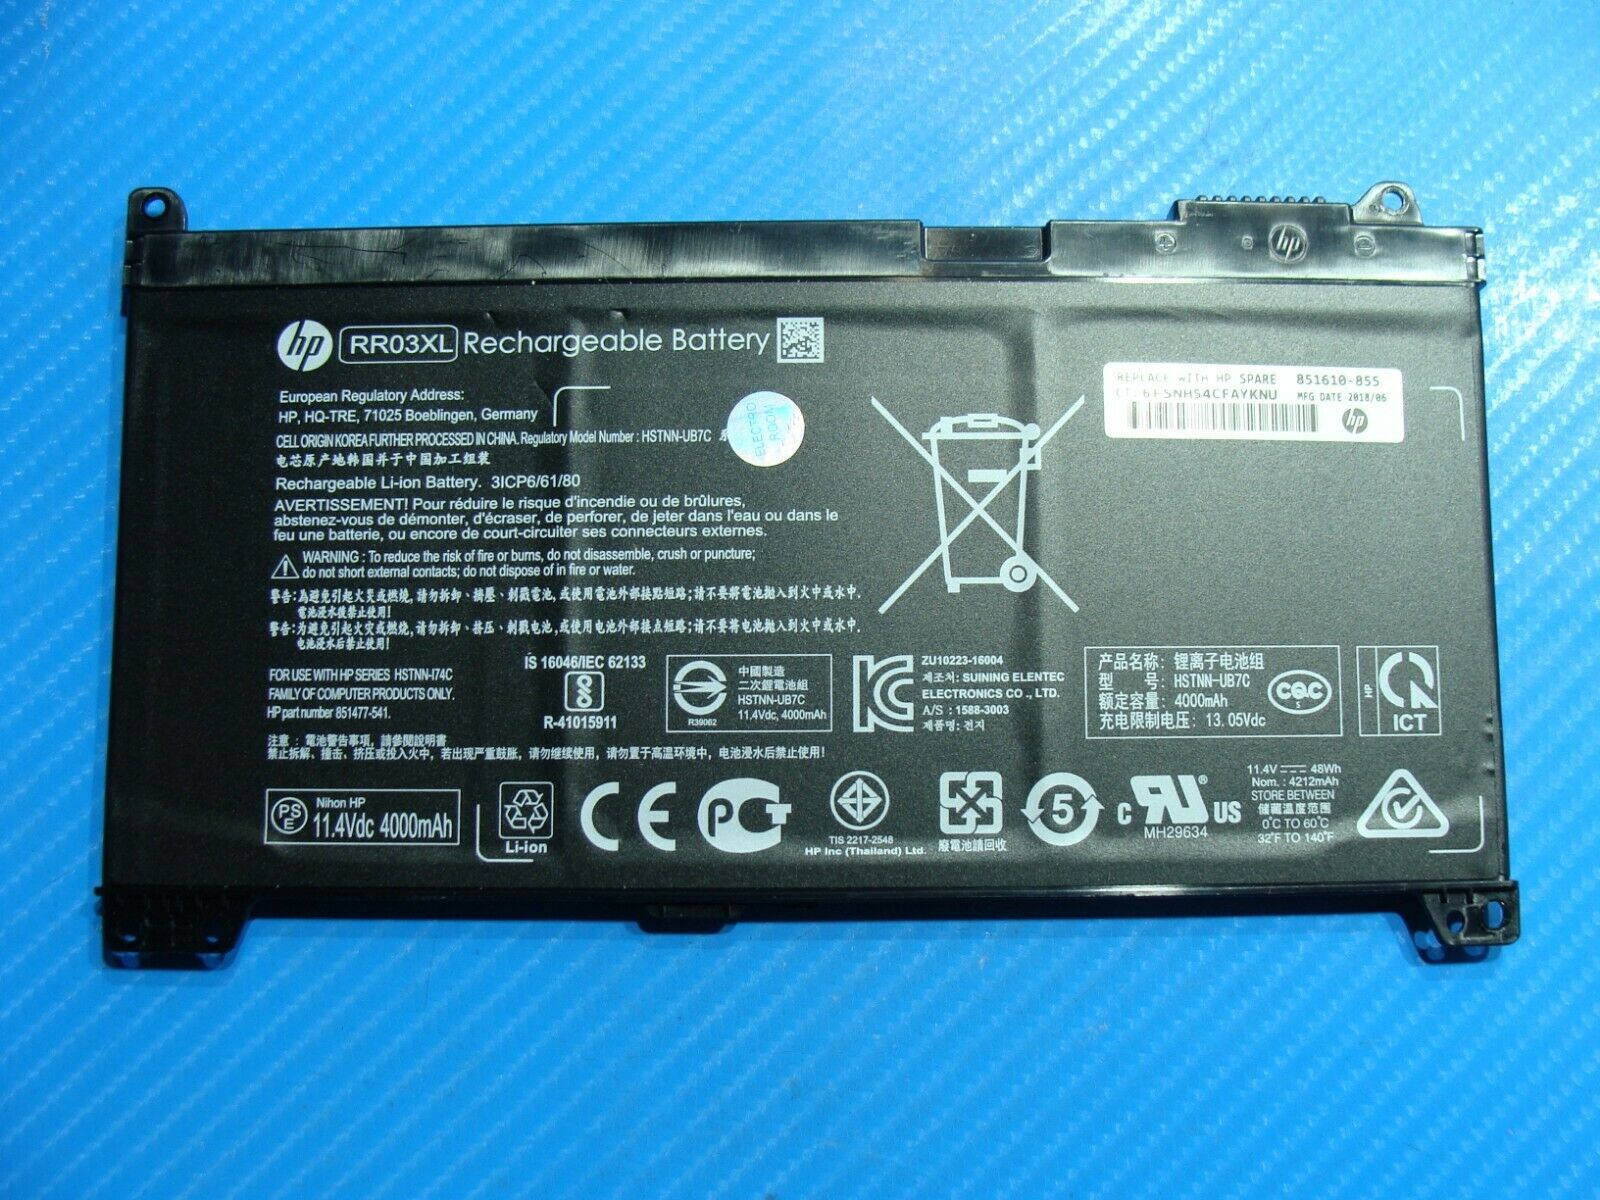 HP ProBook 450 G5 15.6